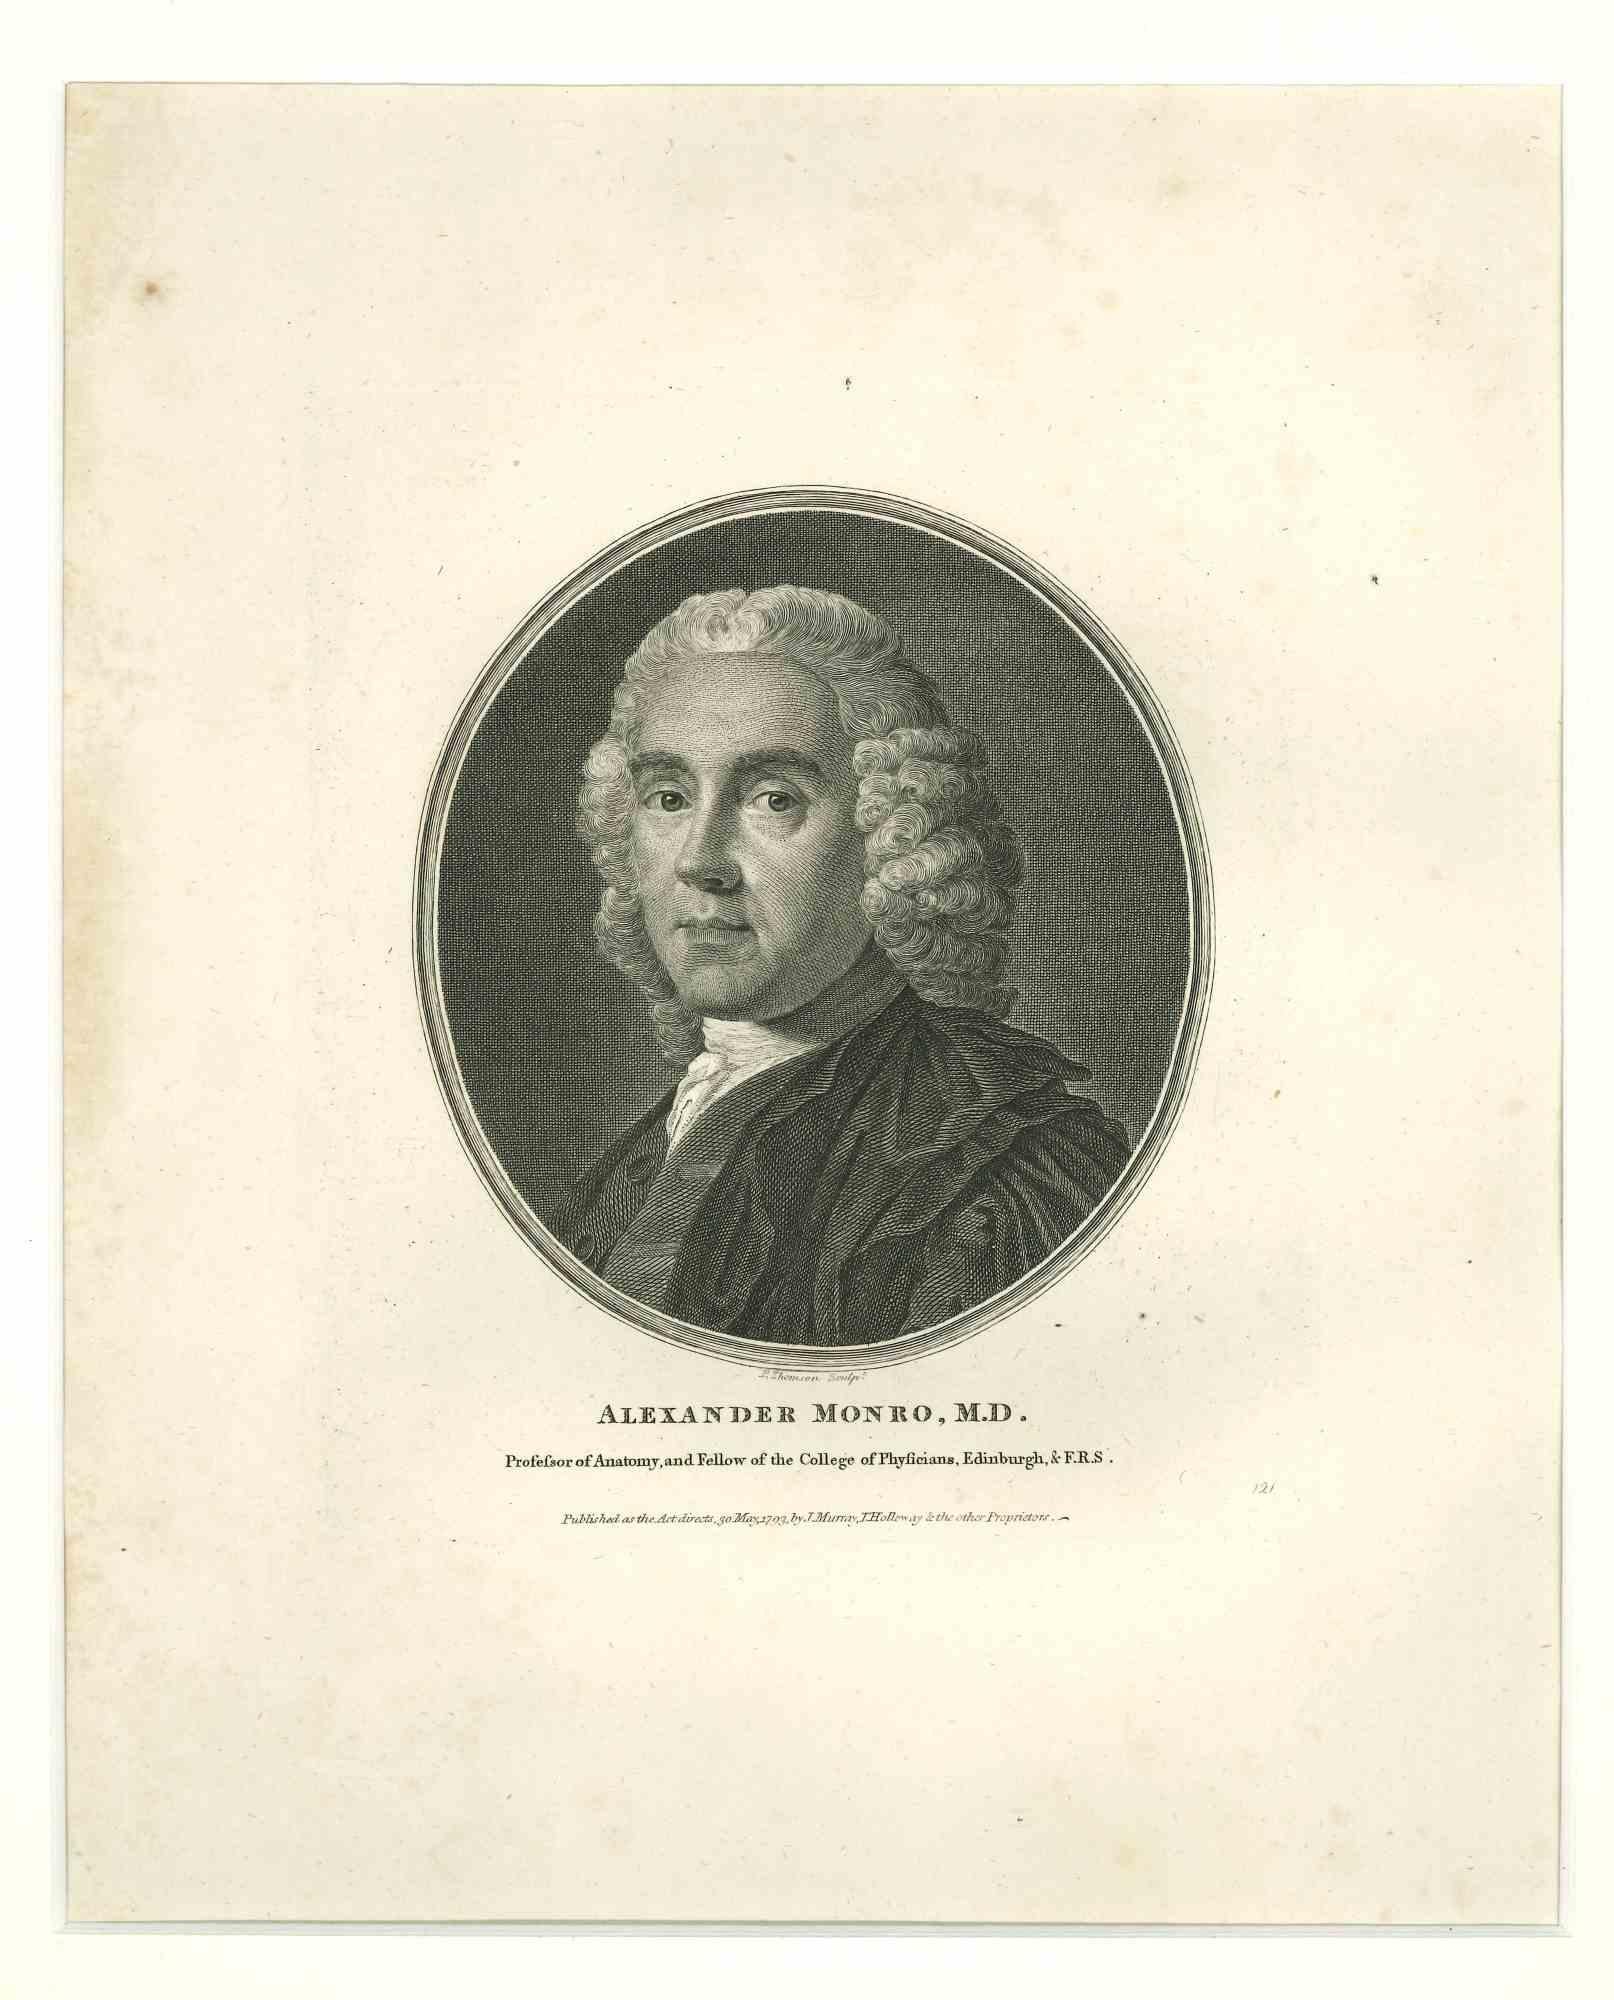 Das Porträt von Alexander Monro ist eine Originalradierung von P. Thomson aus dem Jahr 1793.

Guter Zustand, montiert auf einem weißen Passepartout aus Karton (49x34 cm).

Das Porträt stellt Alexander Monro, Professor für Anatomie am Edinburgh